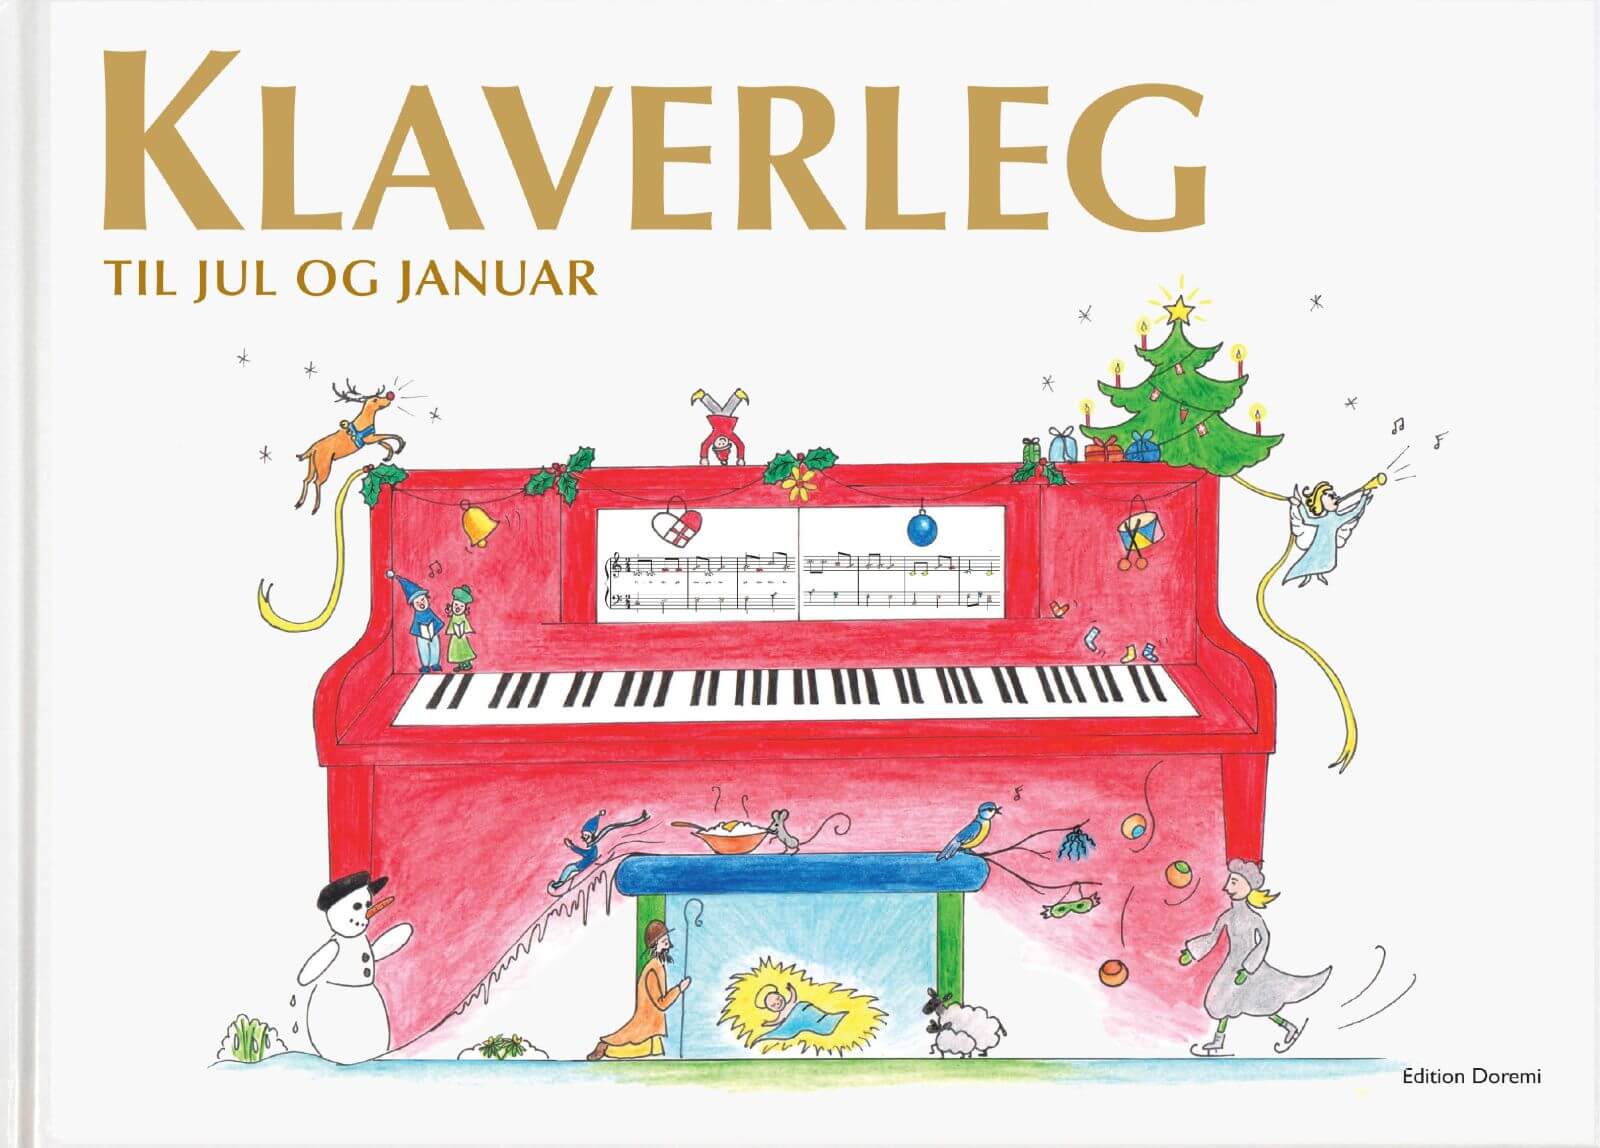 Julebogen: Klaverleg til jul januar